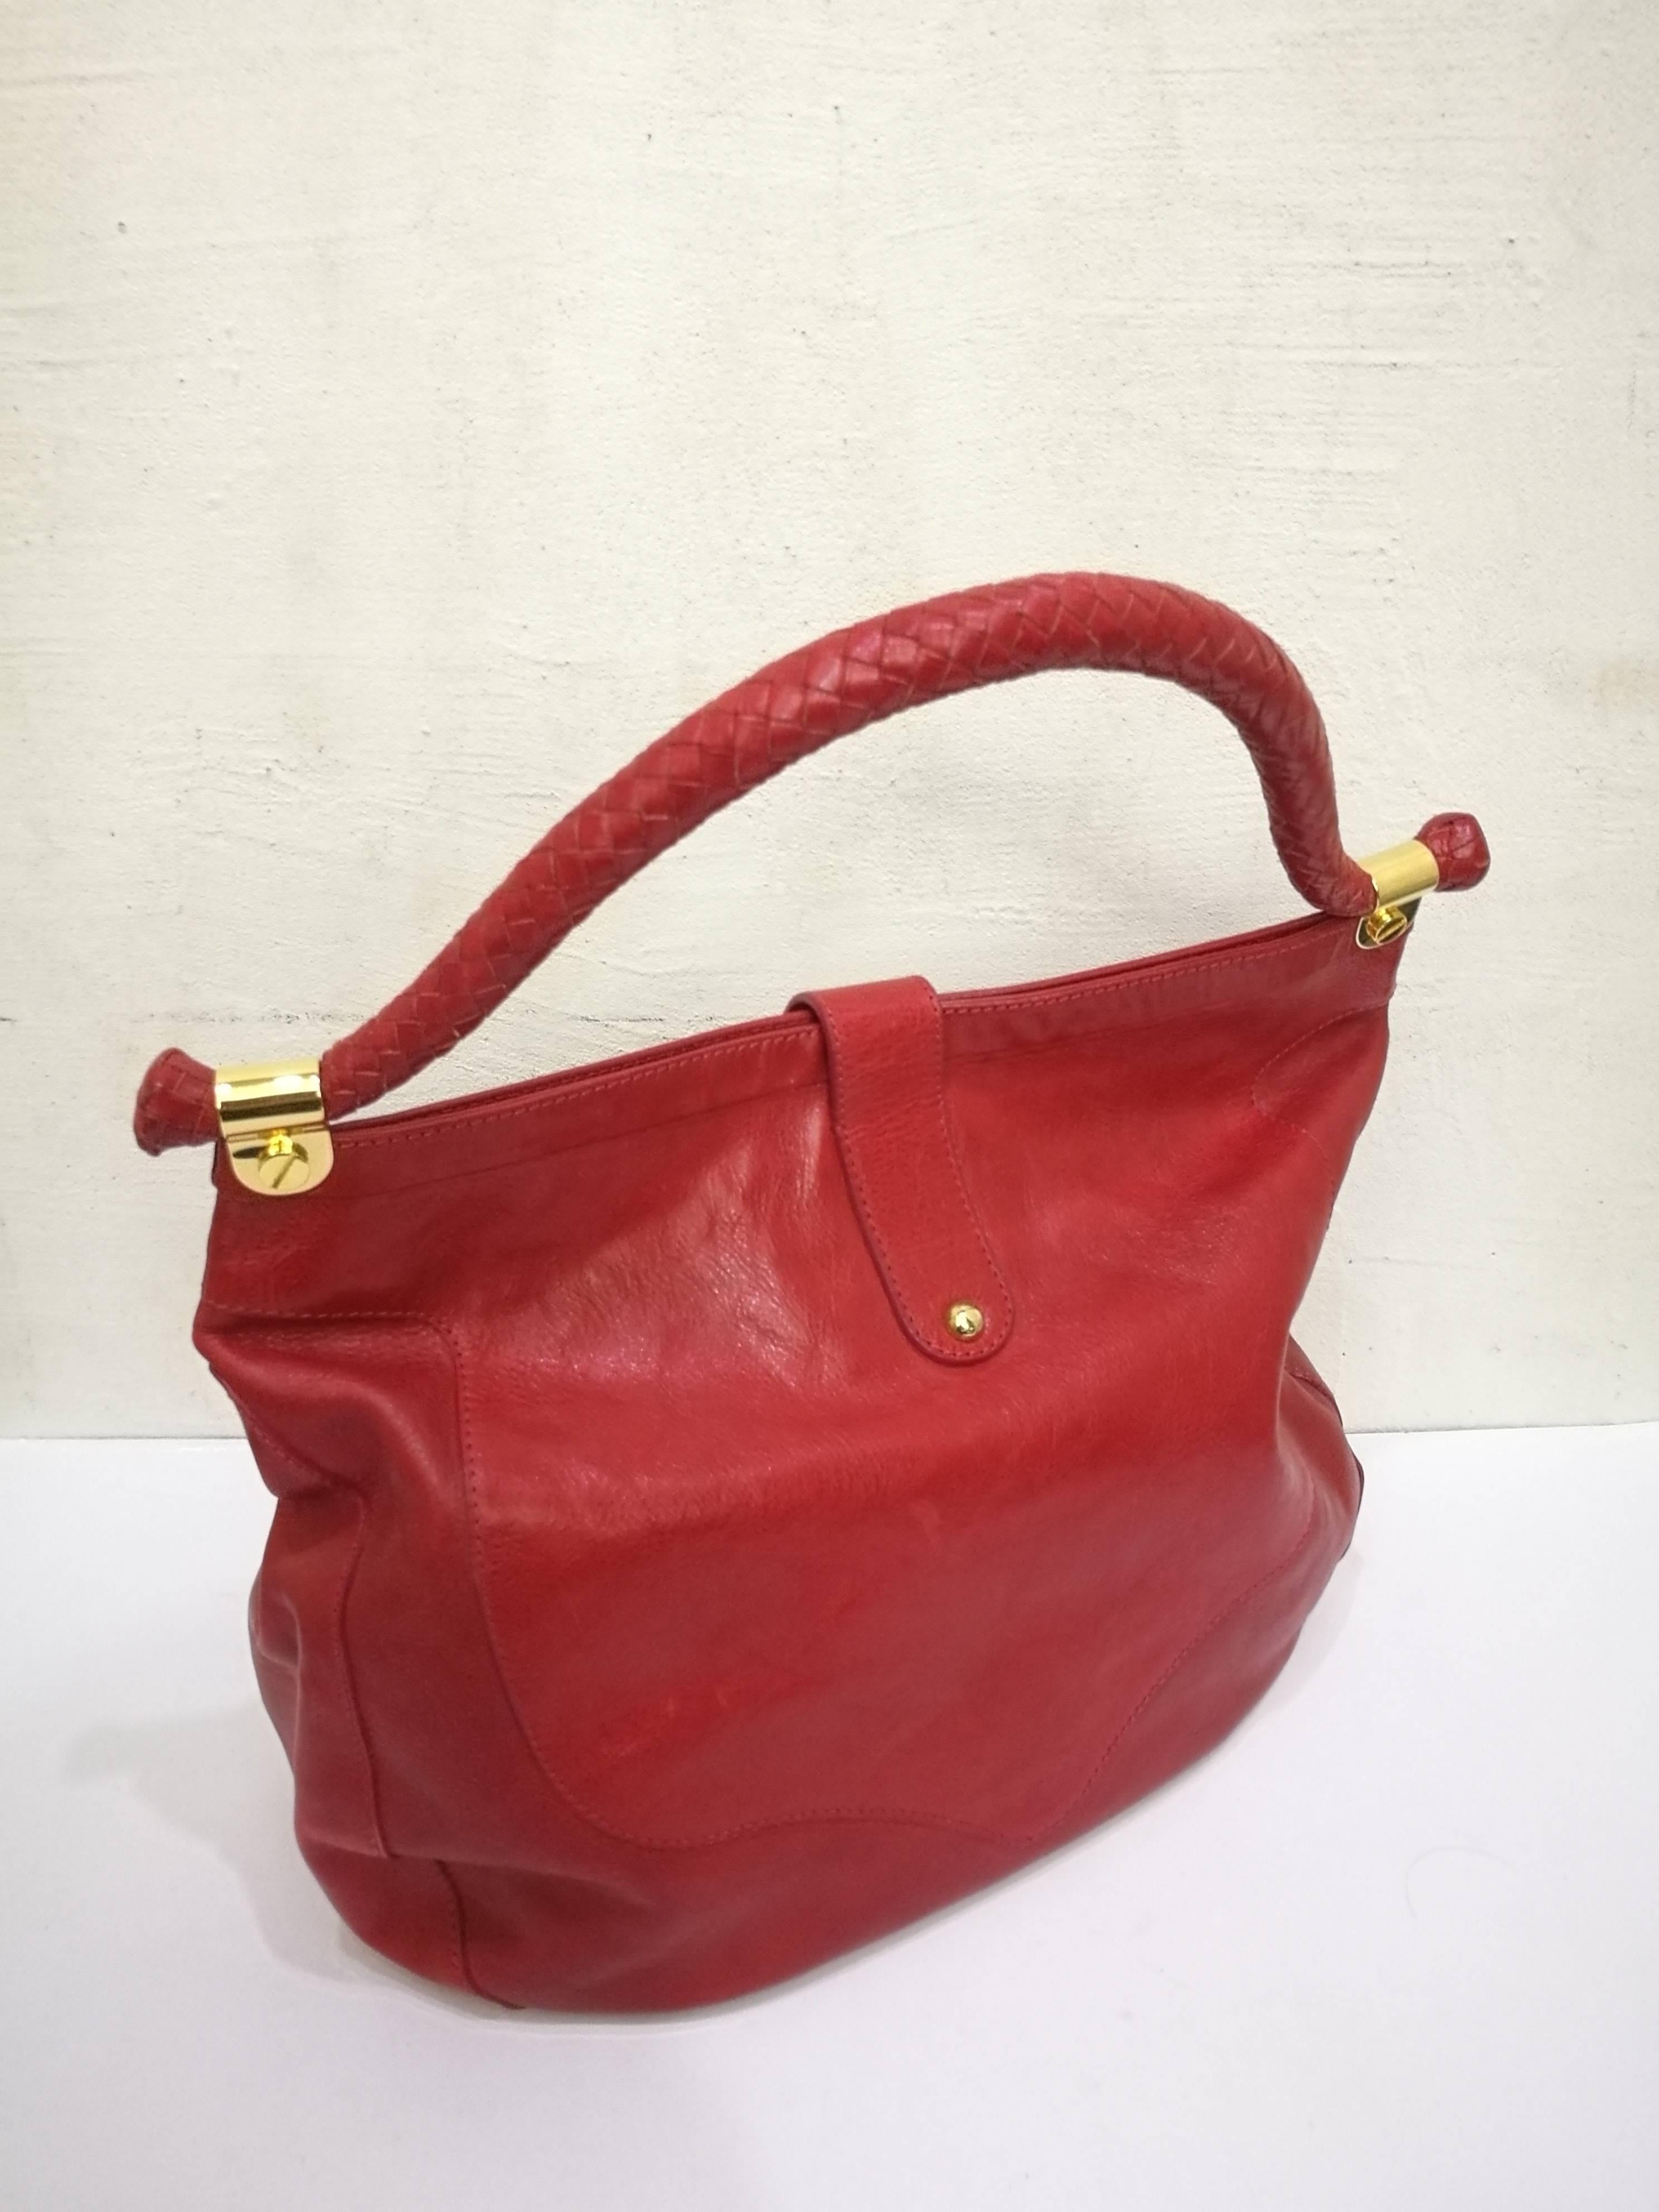 Jimmy Choo Red Leather Gold Hardware Hobo Shoulder Bag
